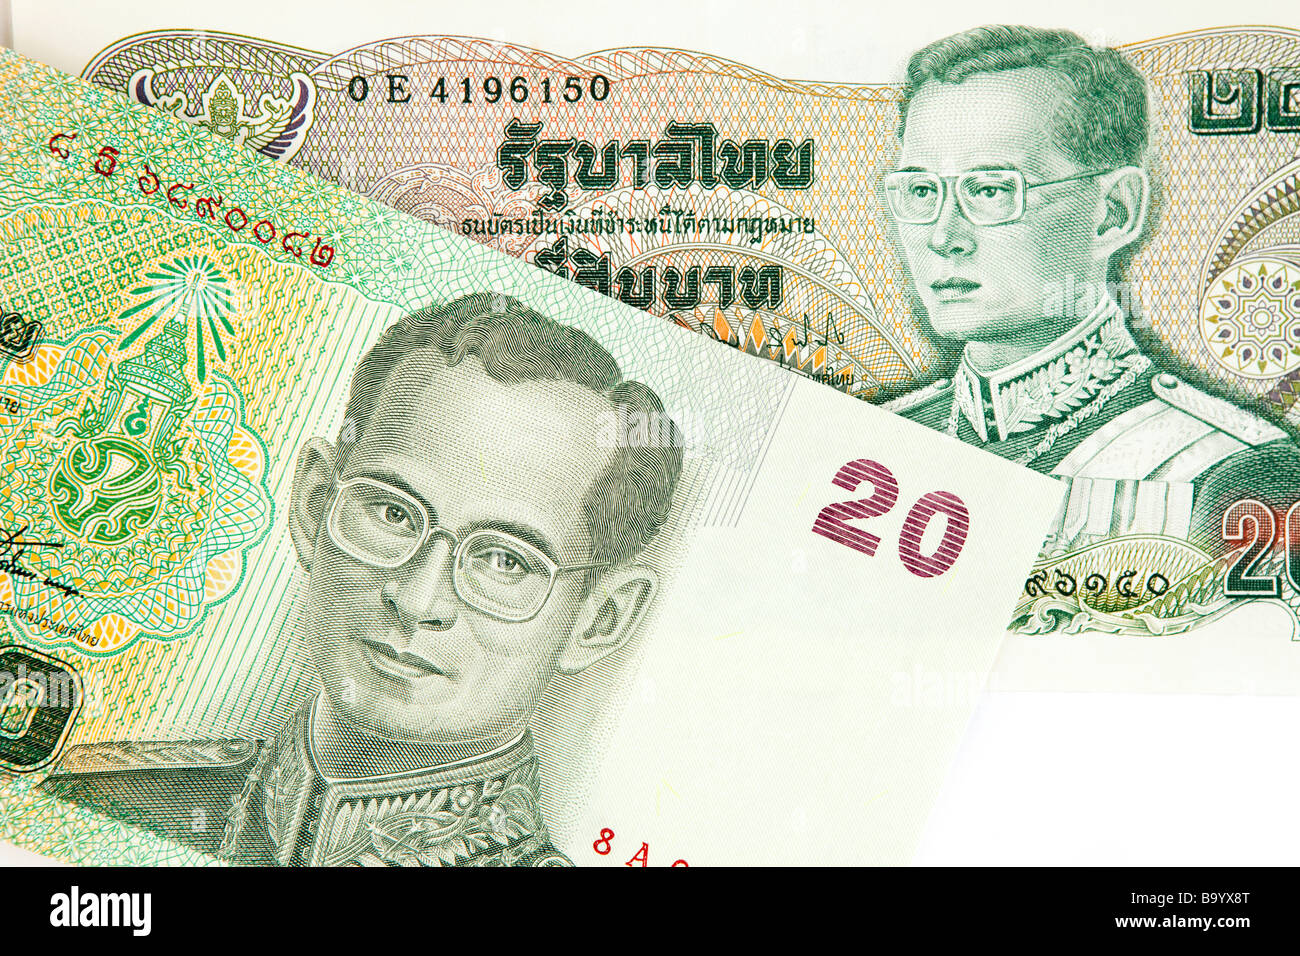 Frau mit Thai Geld verstecken ihr Gesicht isoliert auf weißem Hintergrund  Stockfotografie - Alamy